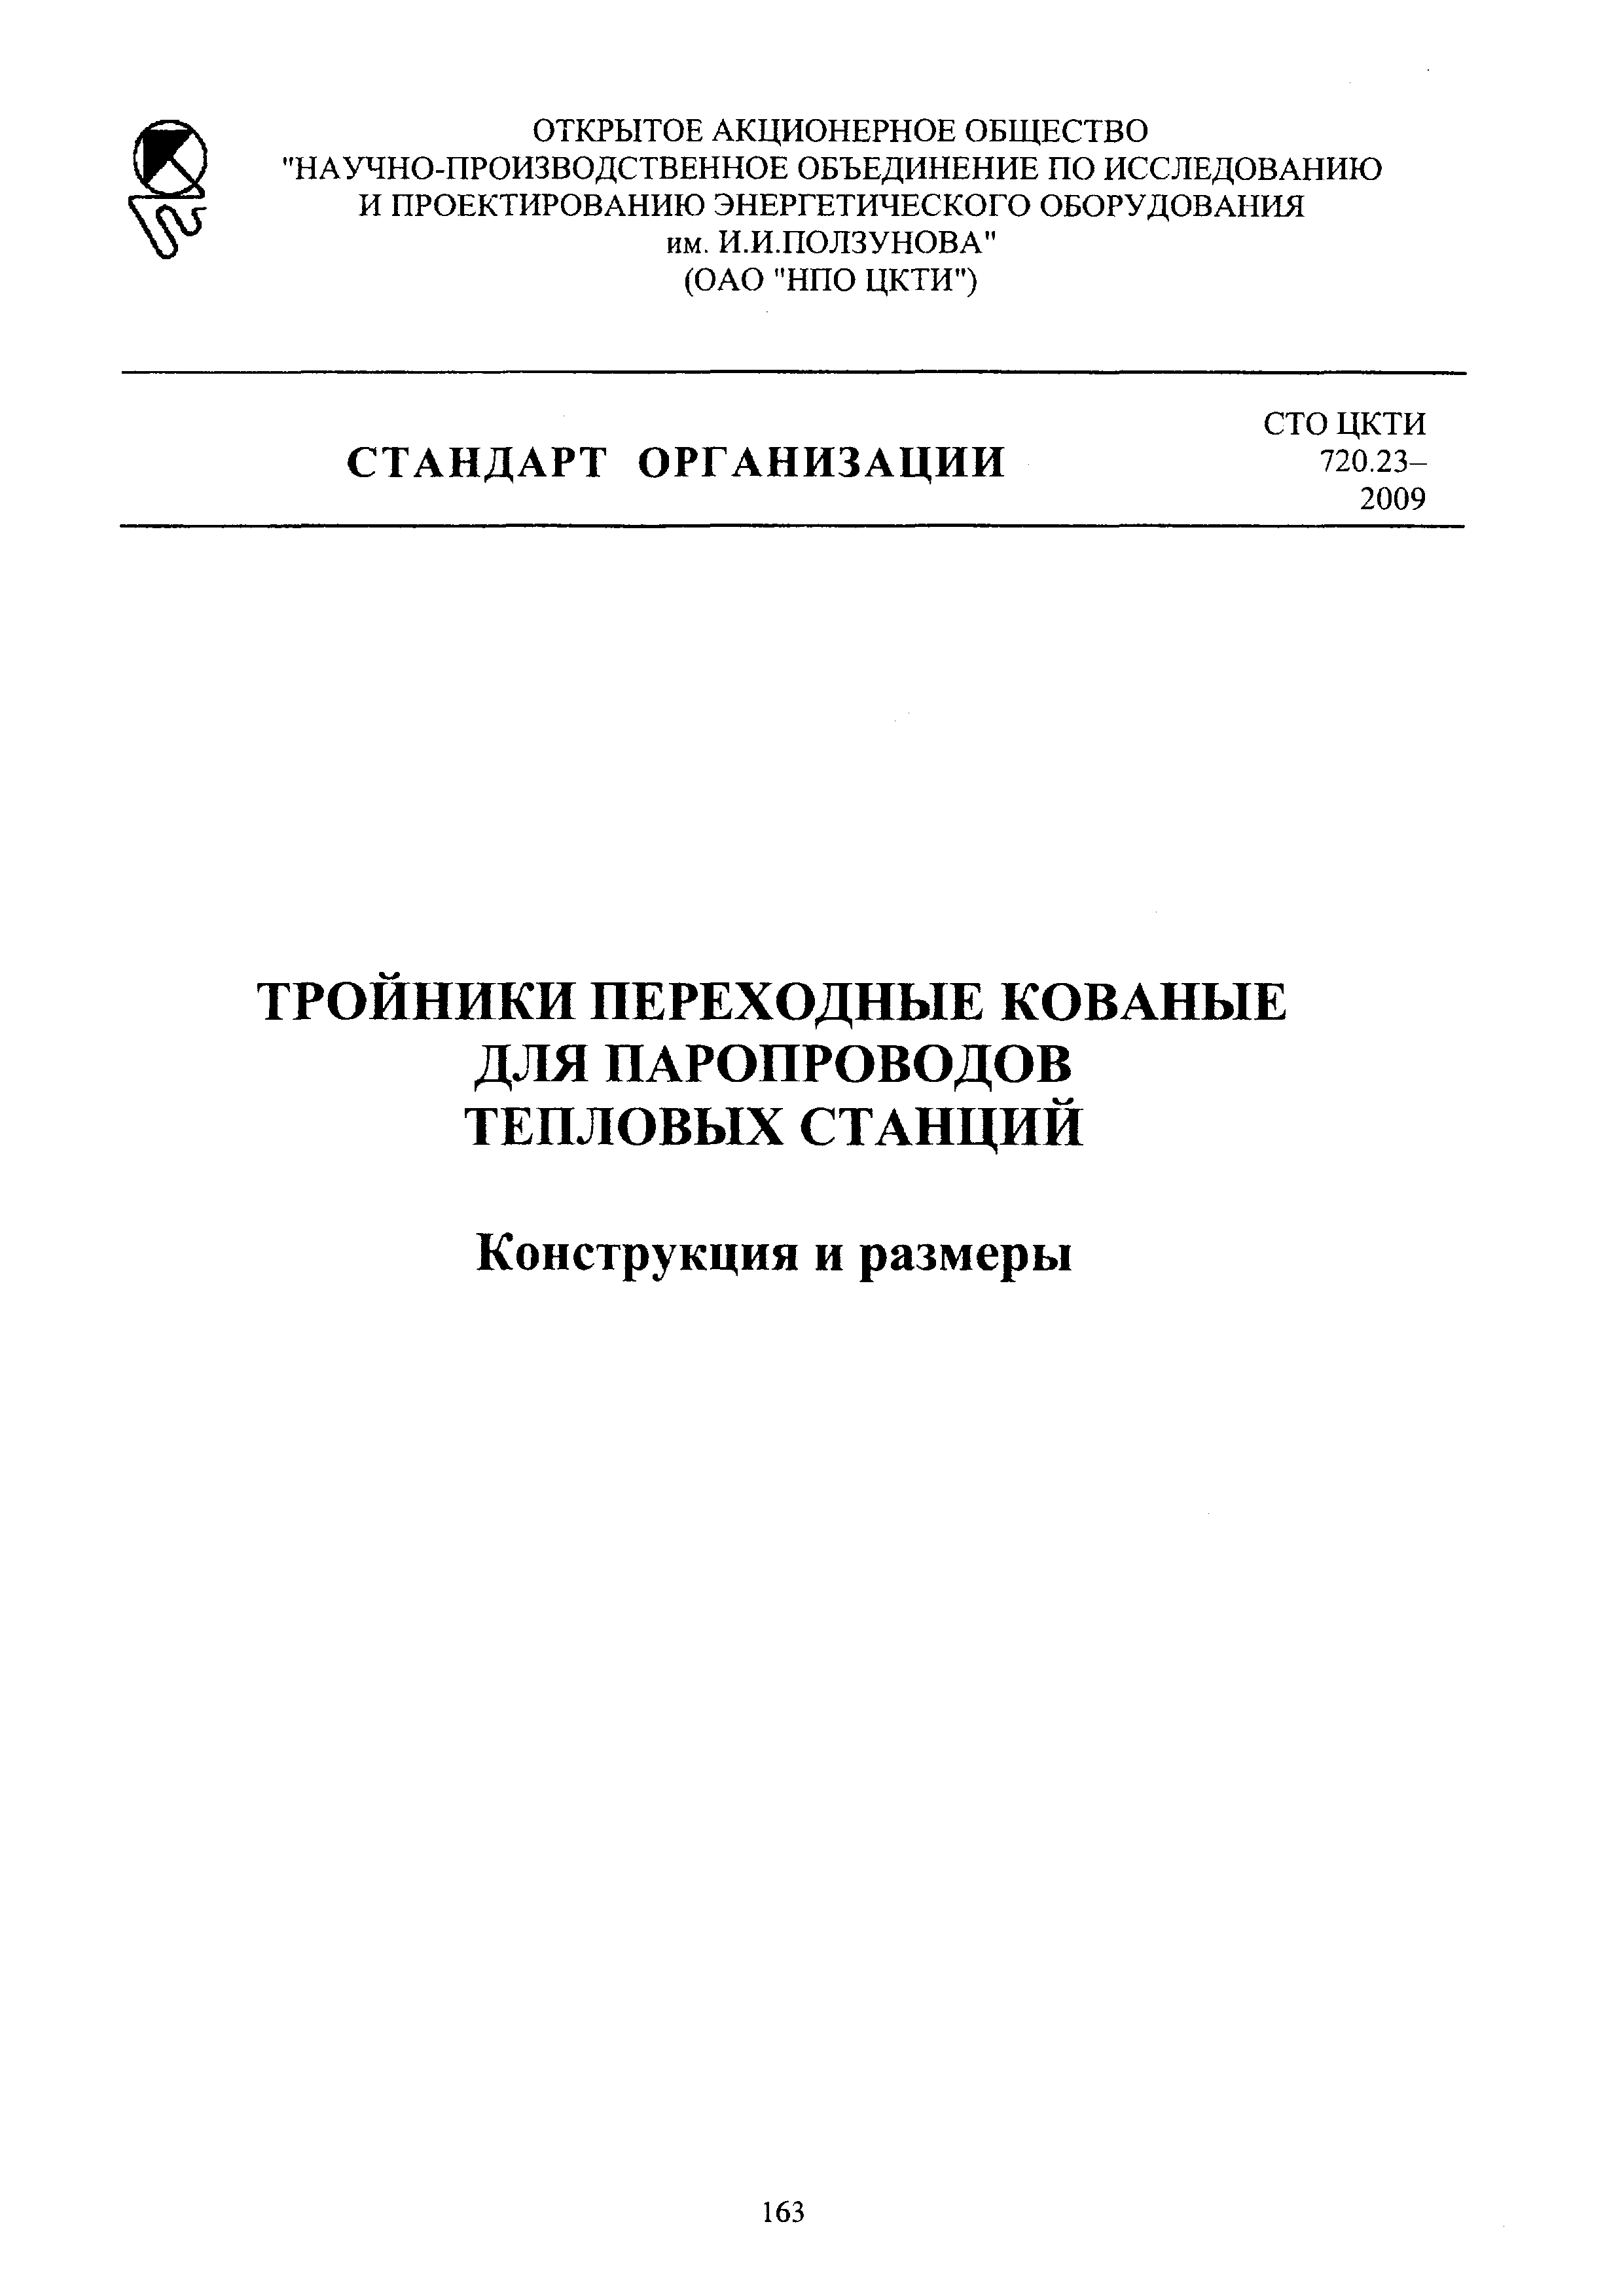 СТО ЦКТИ 720.23-2009